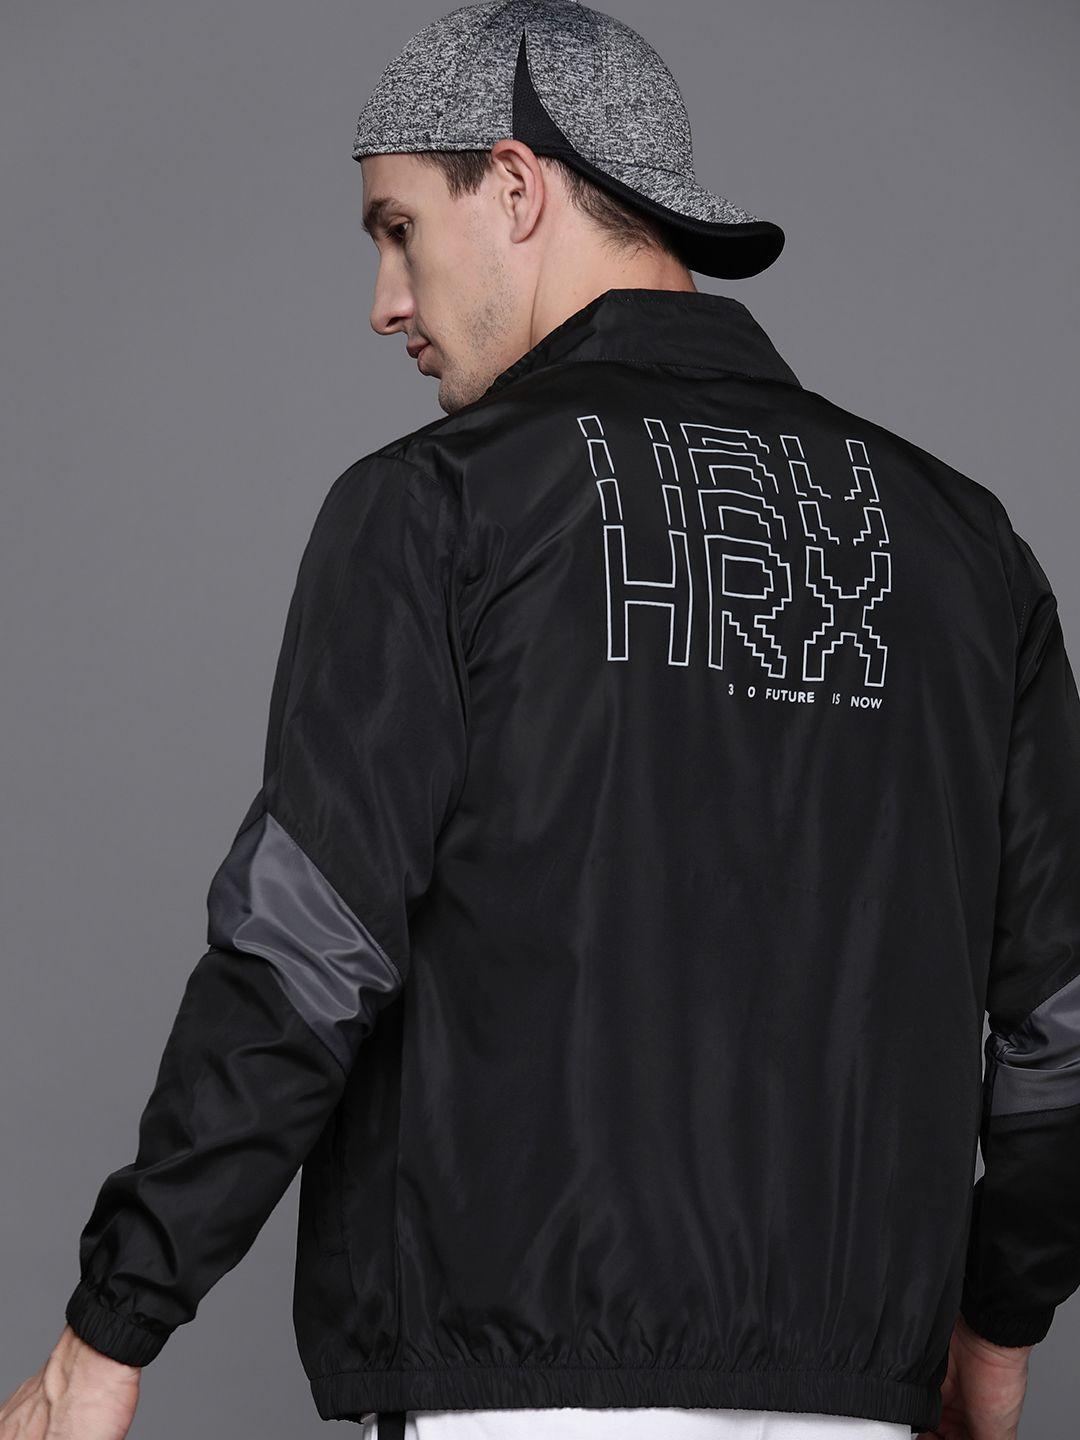 hrx by hrithik roshan men back brand logo rapid-dry tailored jacket